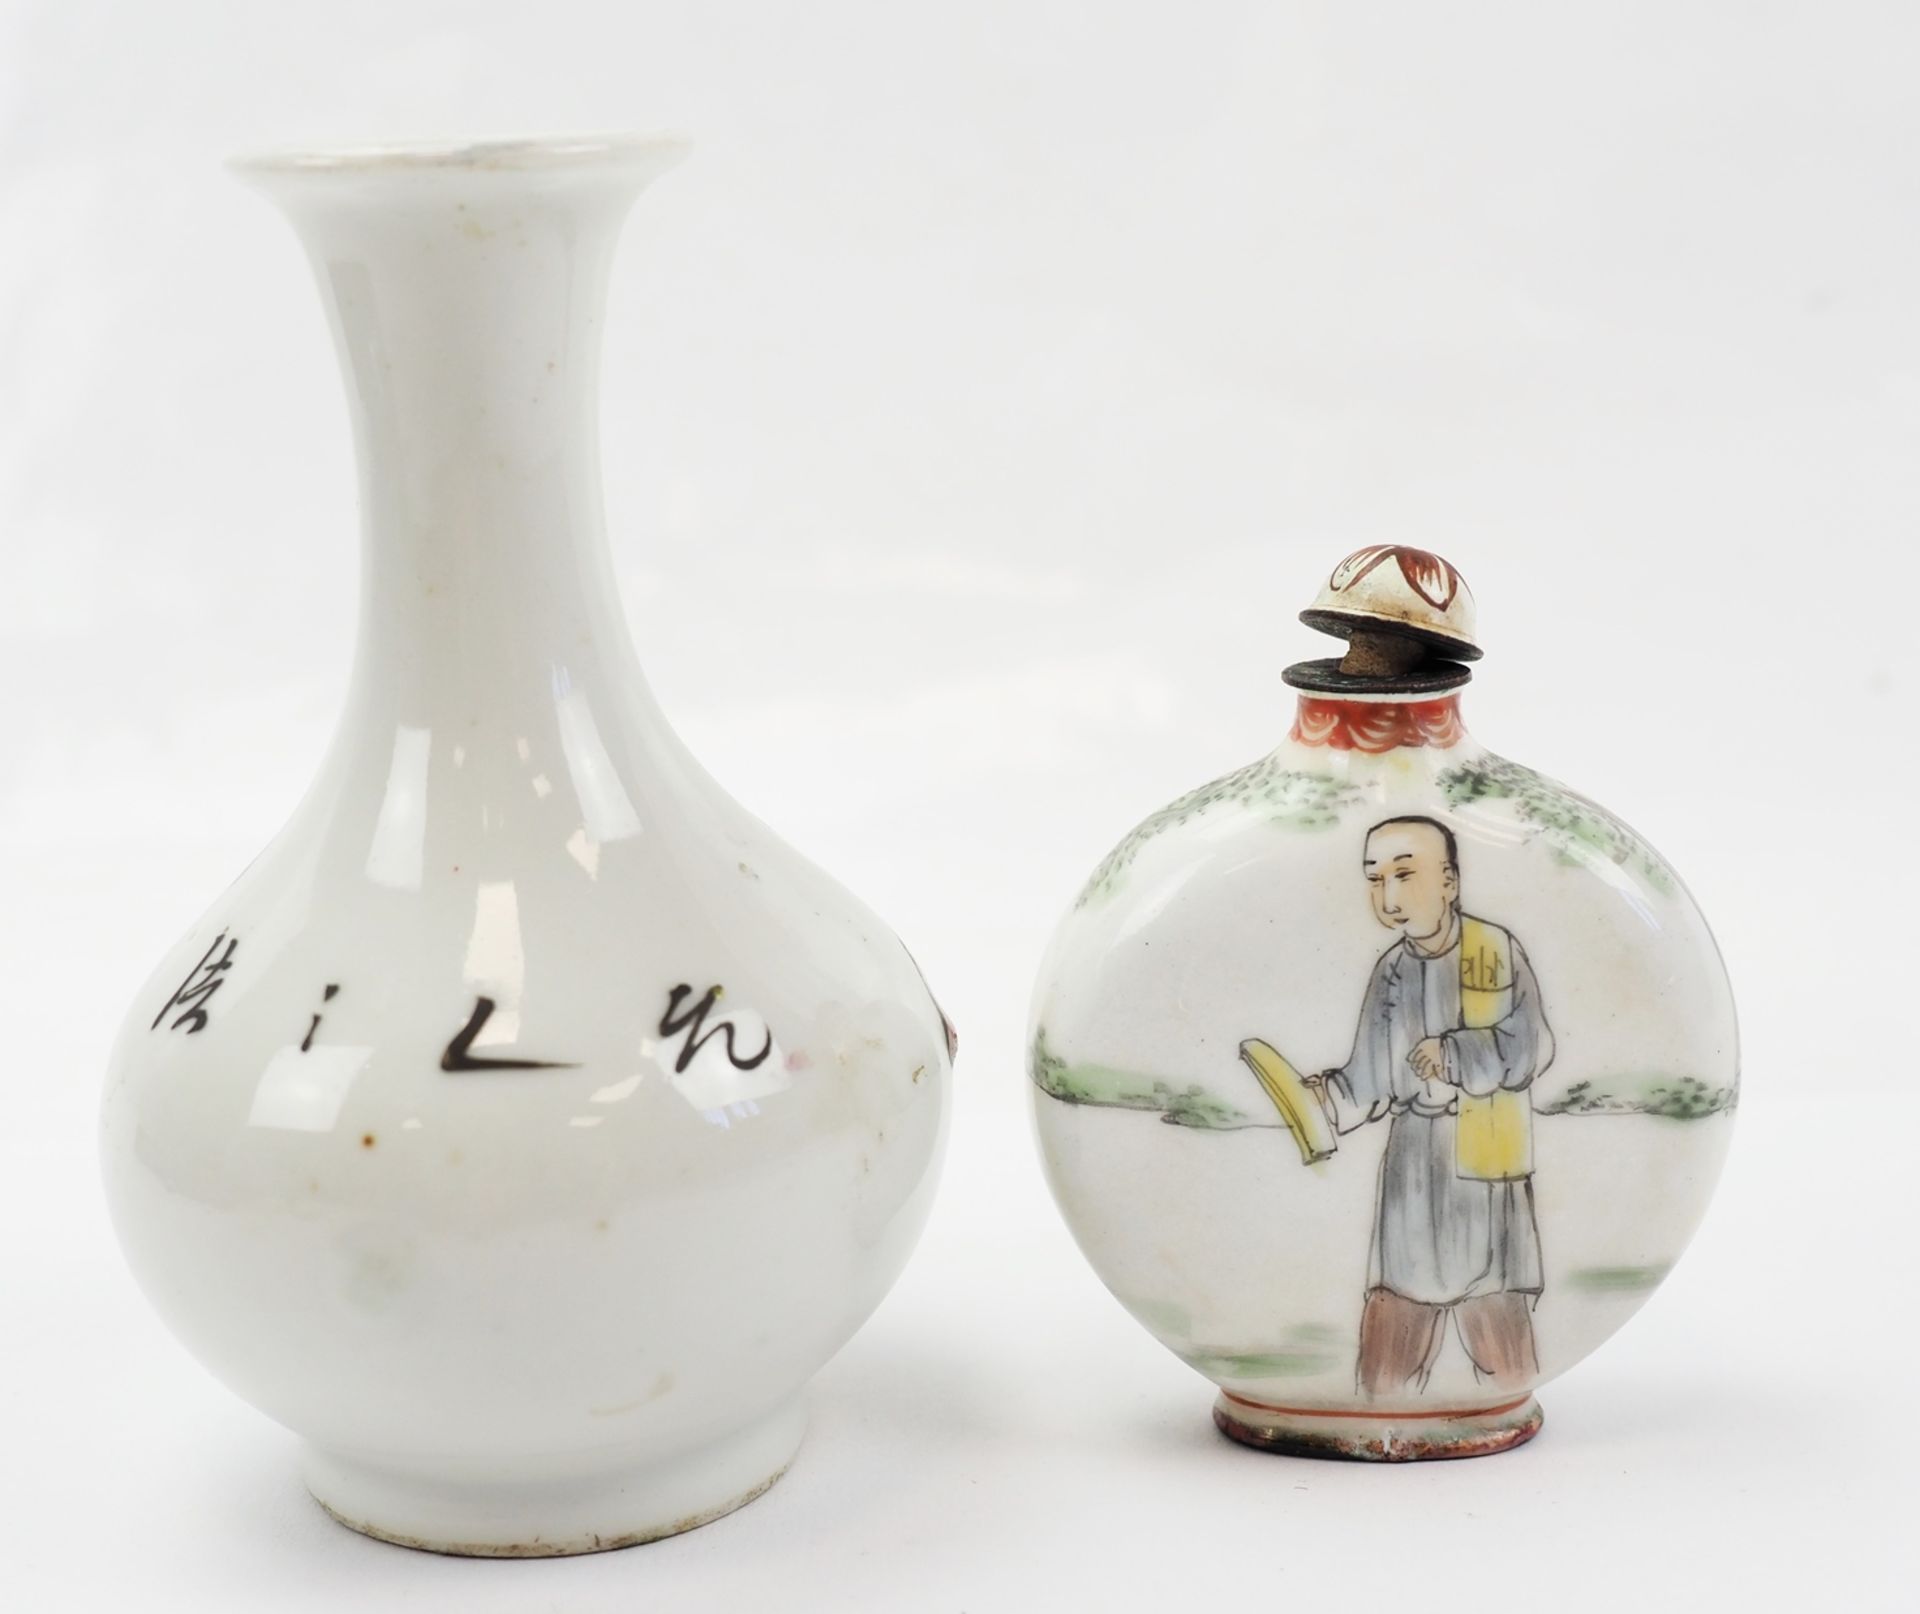 China: kleine Vase und Snuffbottle. - Image 2 of 3